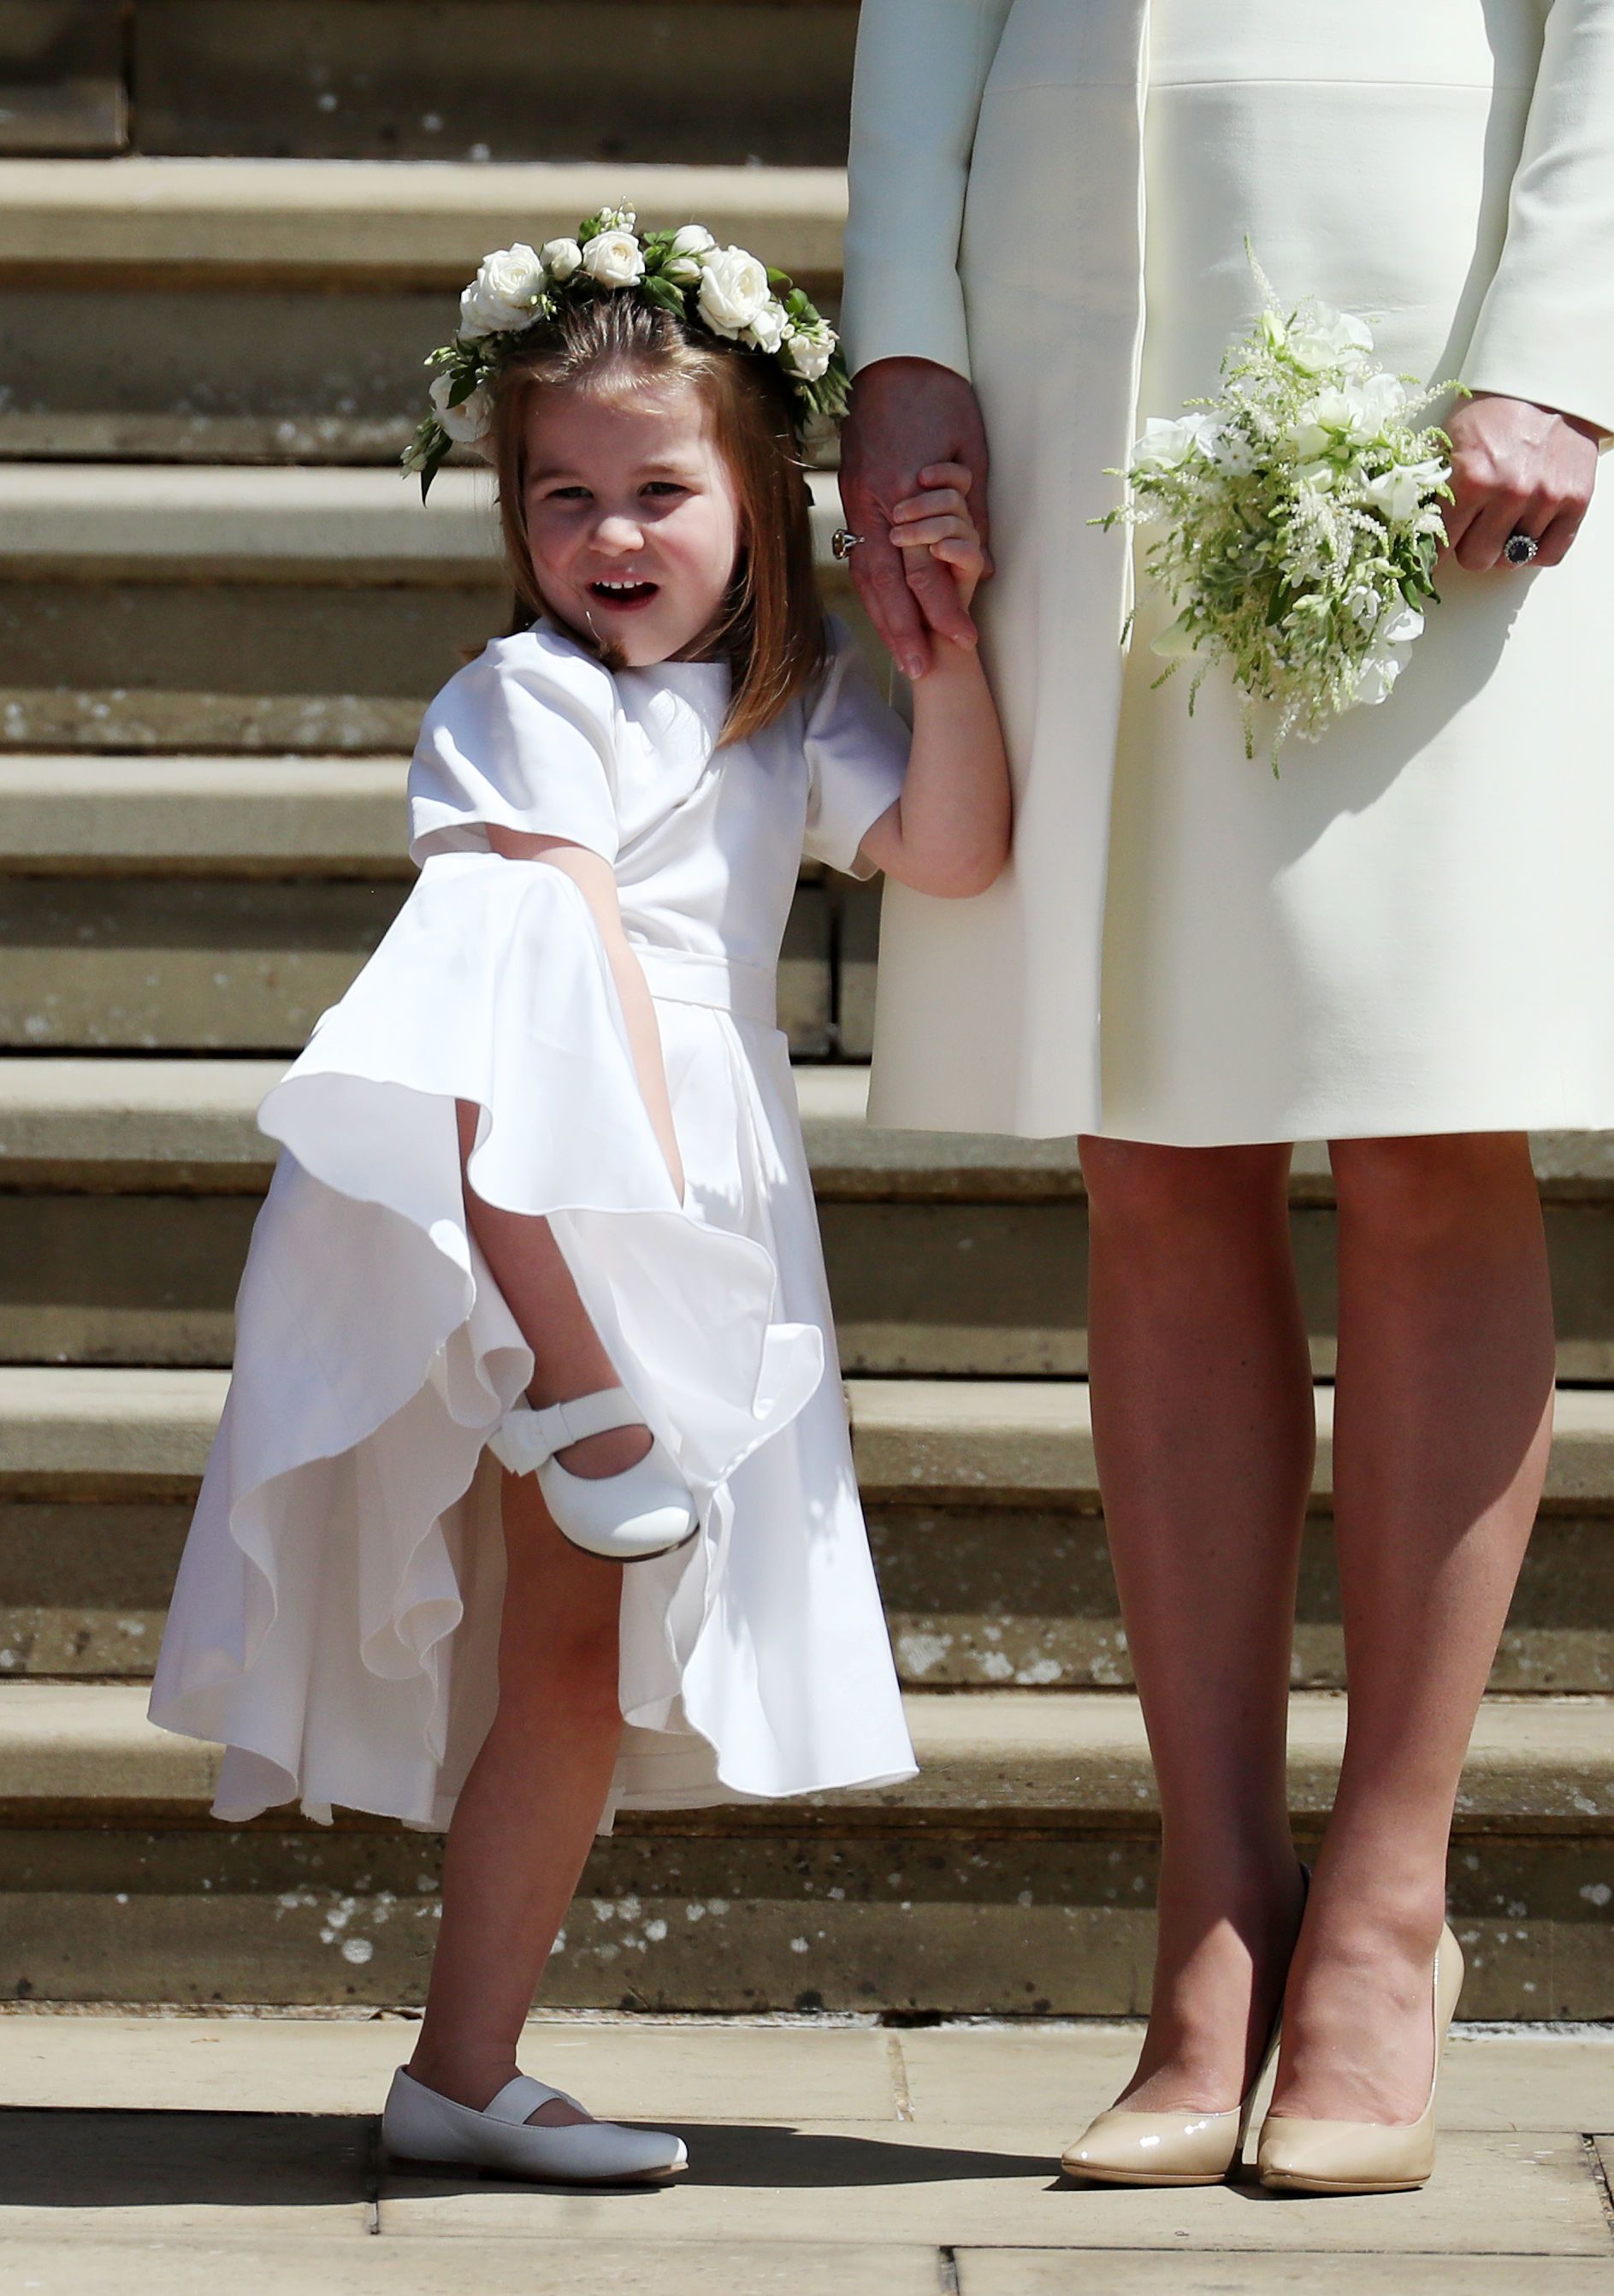 Bridesmaid Princess Charlotte at Harry and Meghan's wedding, 19th